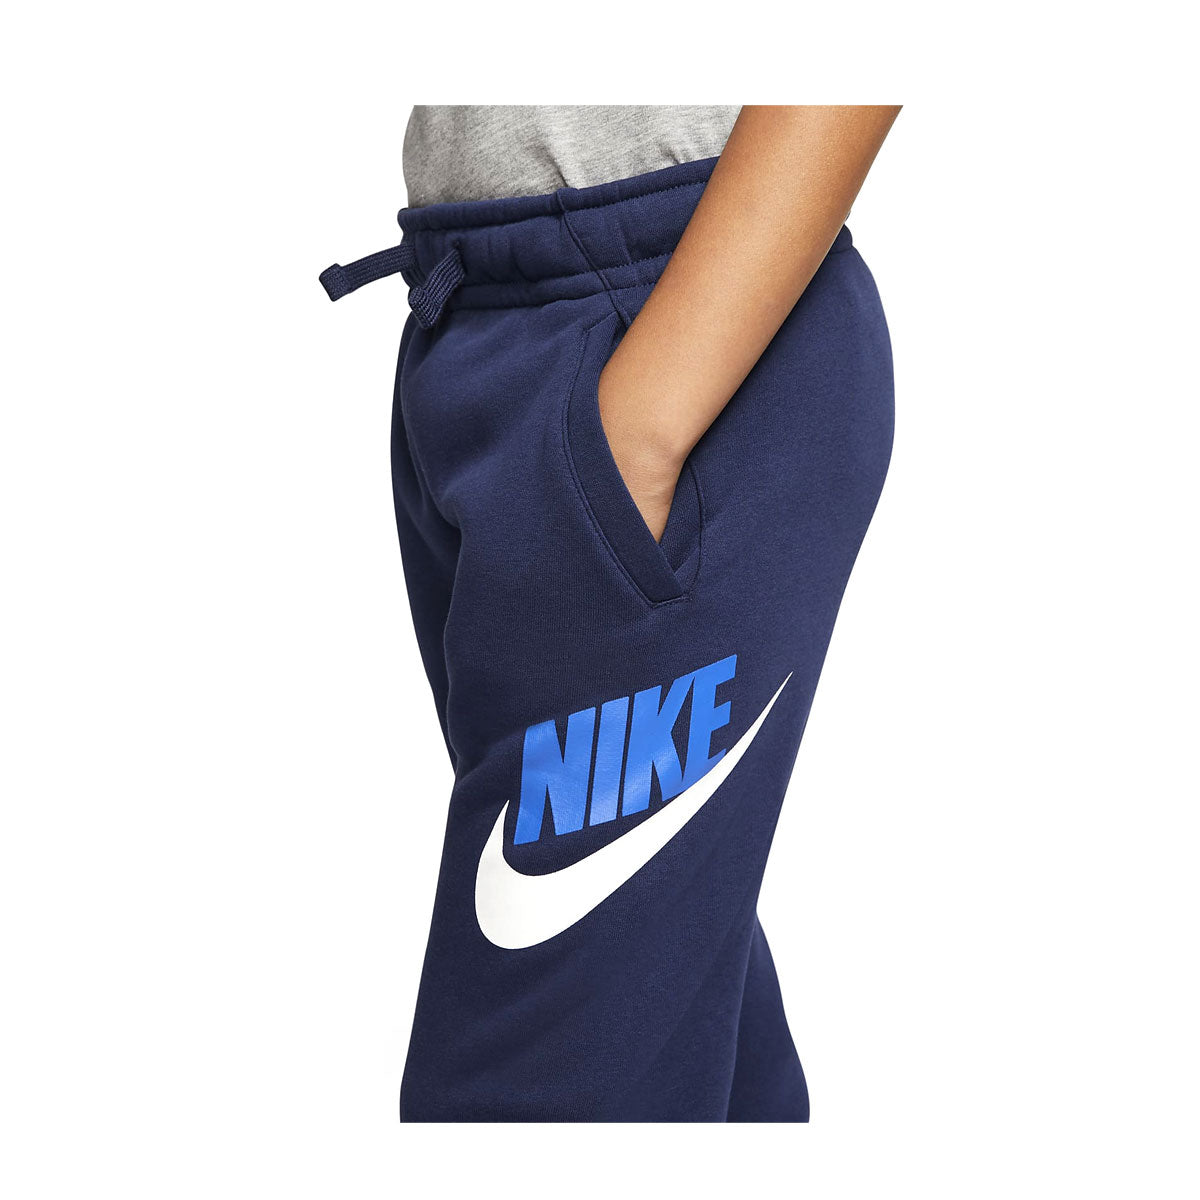 Nike Kids Sportswear Club Fleece Pants